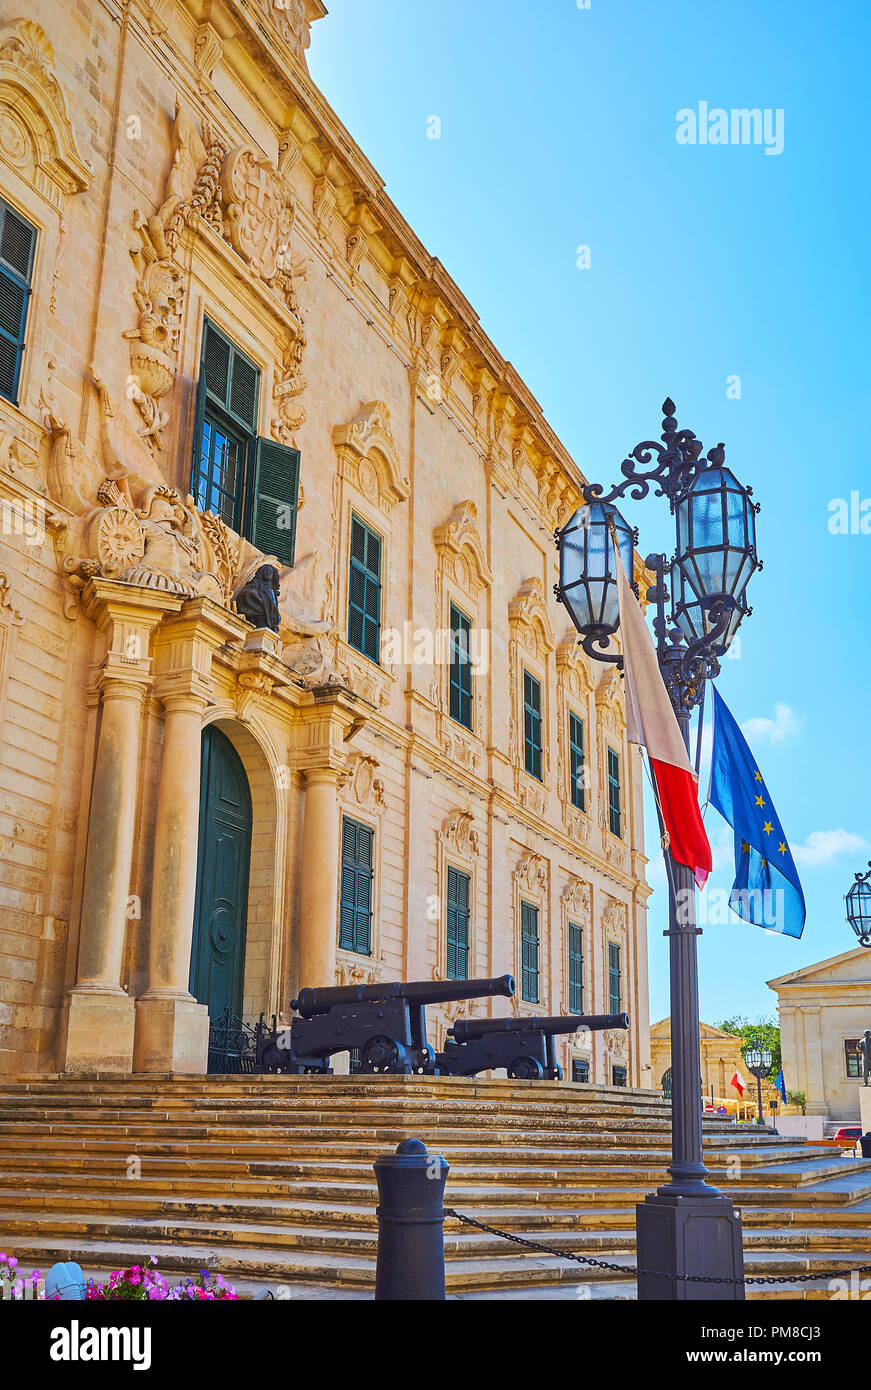 Il vintage lampione con bandiere di Malta e UE in scala, passando all'ingresso principale dell'Auberge de Castille Mansion, che serve come primo Foto Stock